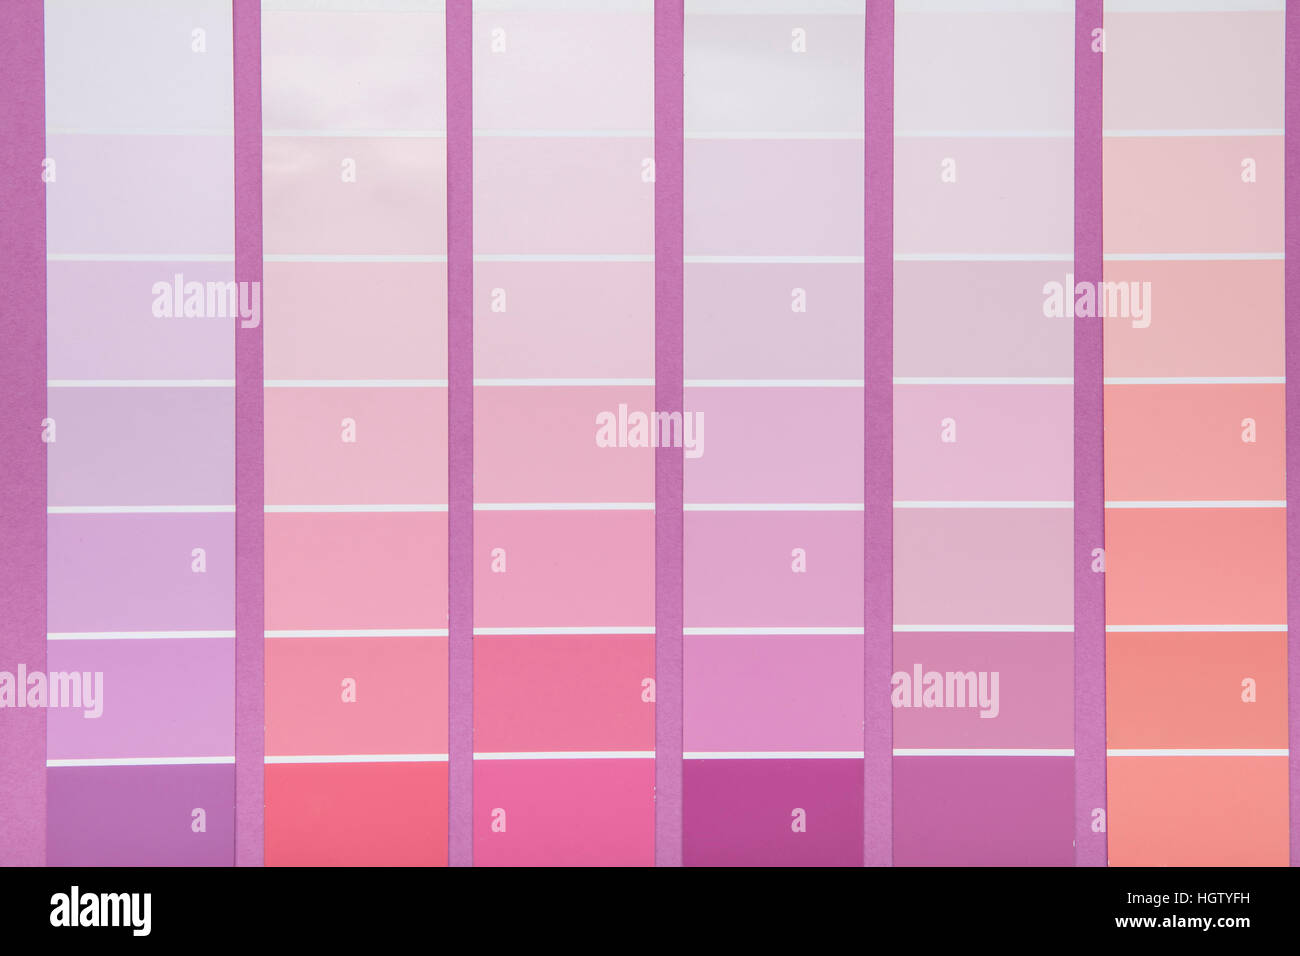 Hintergrund mit Abstufung der rosa Farben Stockfotografie - Alamy